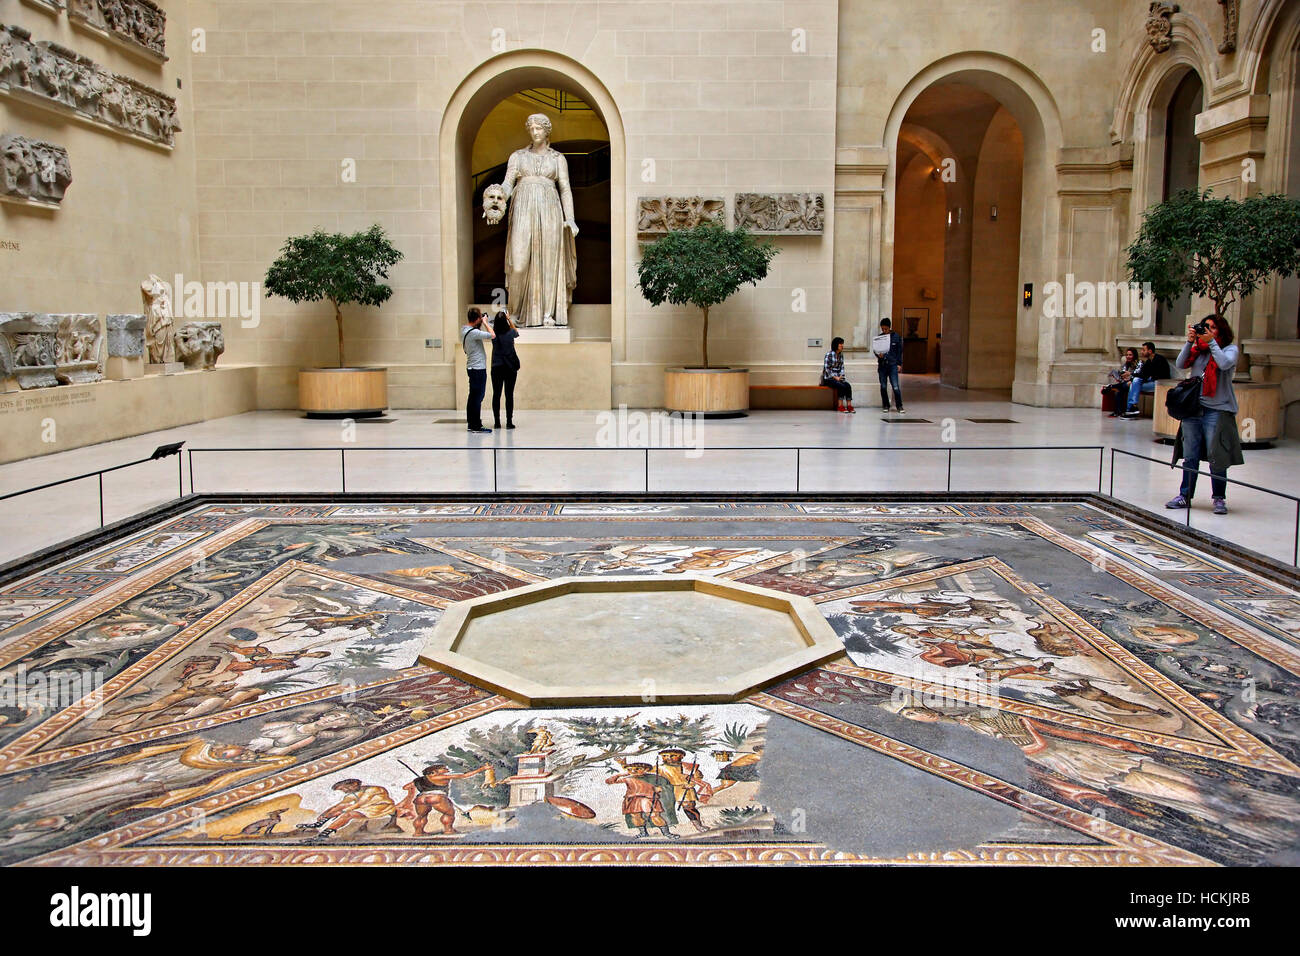 El patio de la Esfinge, con el 'Seasons' mosaicos en el piso y una estatua de Melpomene, ala Denon, Museo del Louvre, París, Francia. Foto de stock